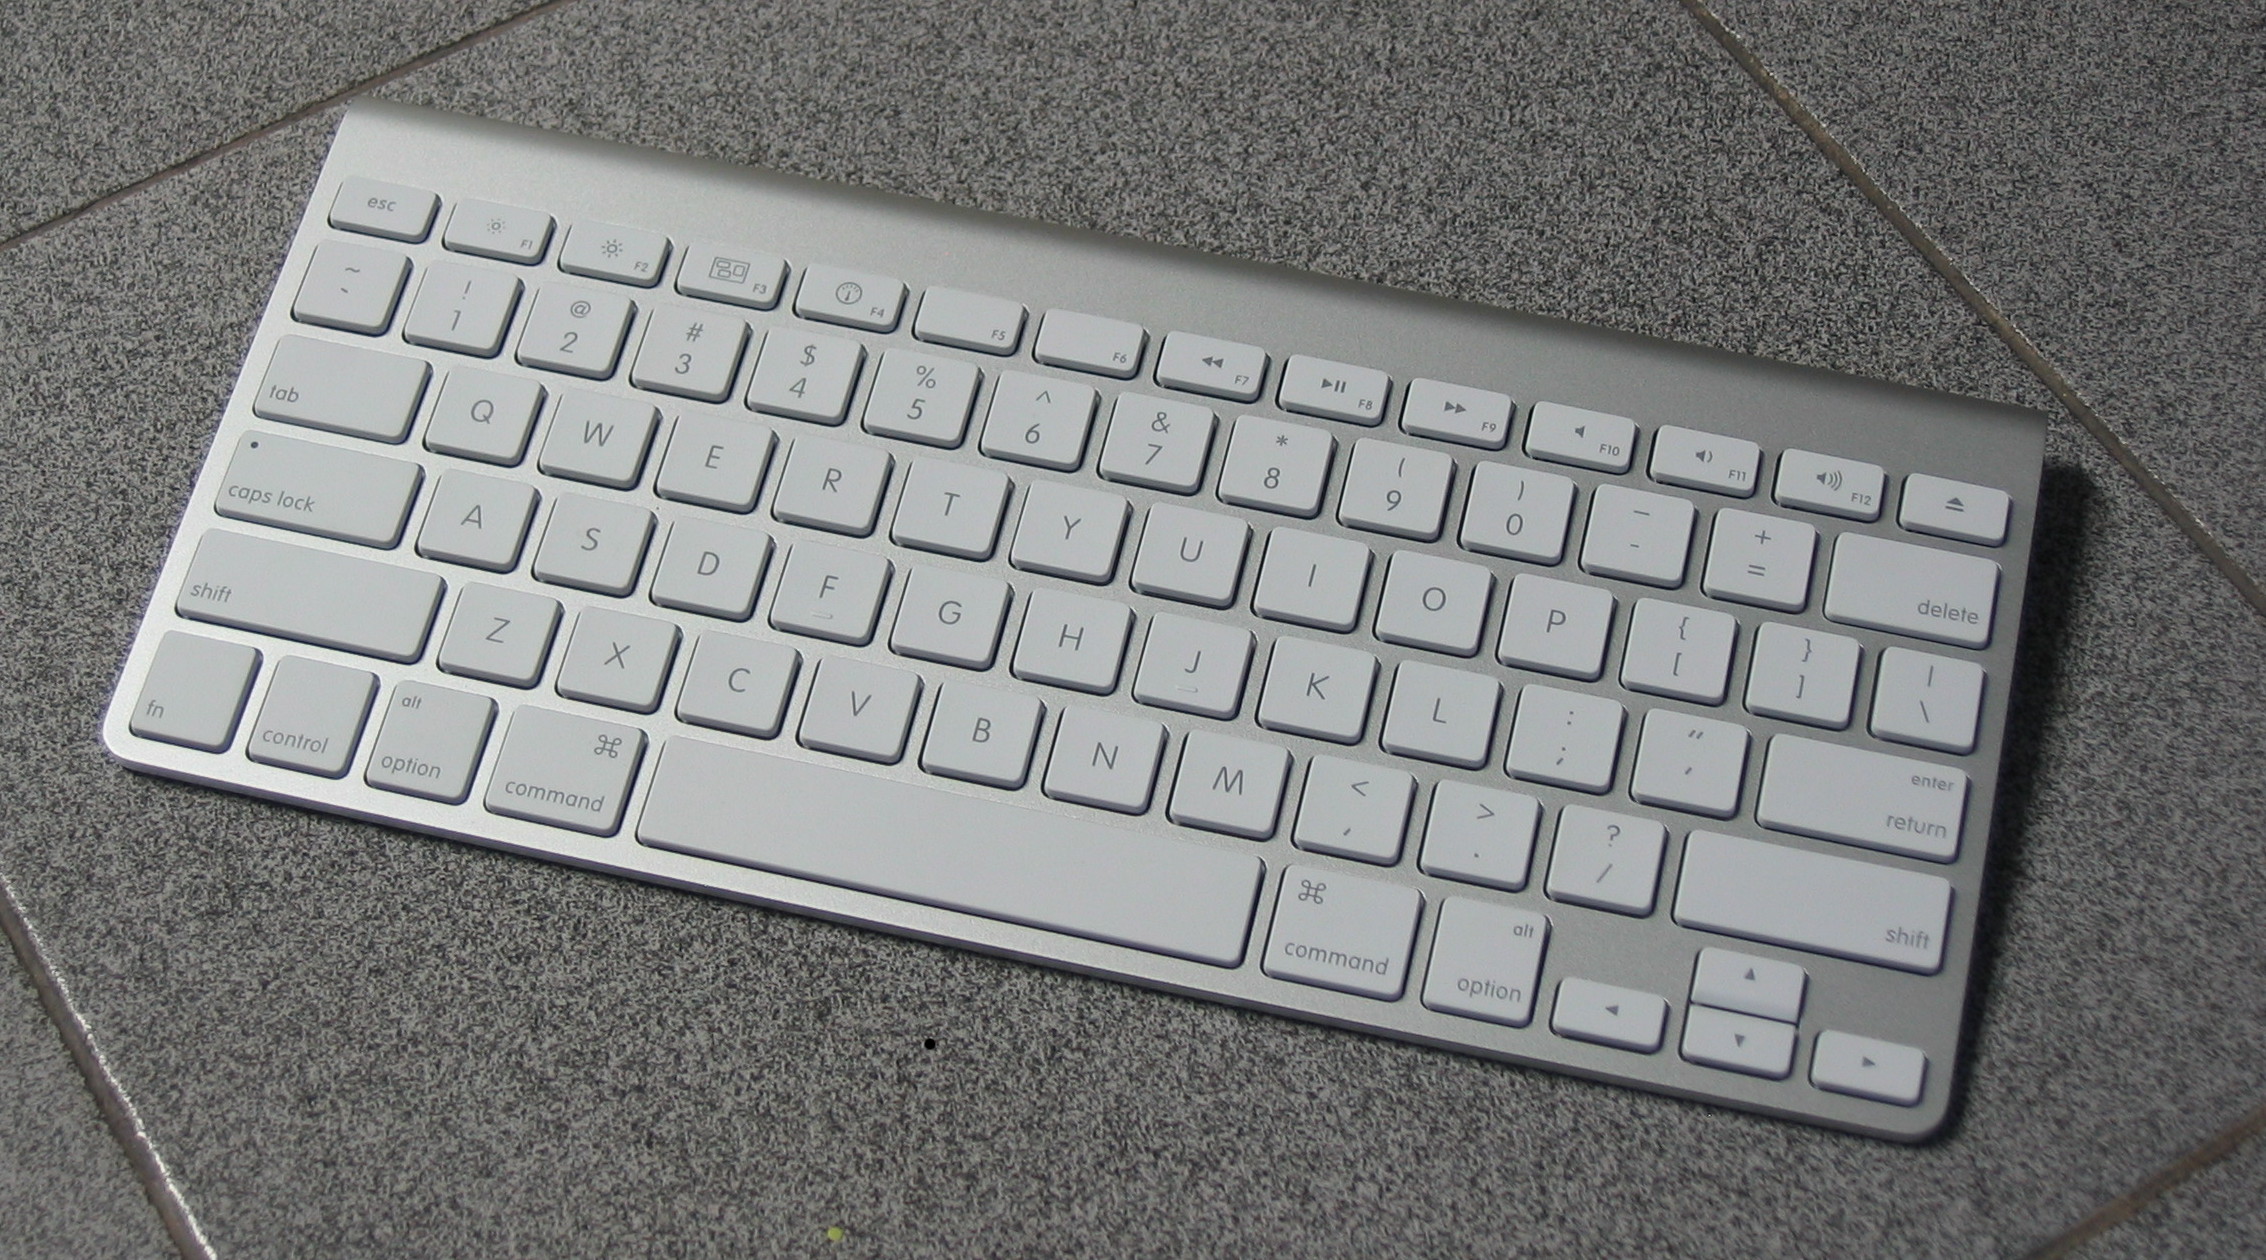 Bluetooth Keyboard For Mac